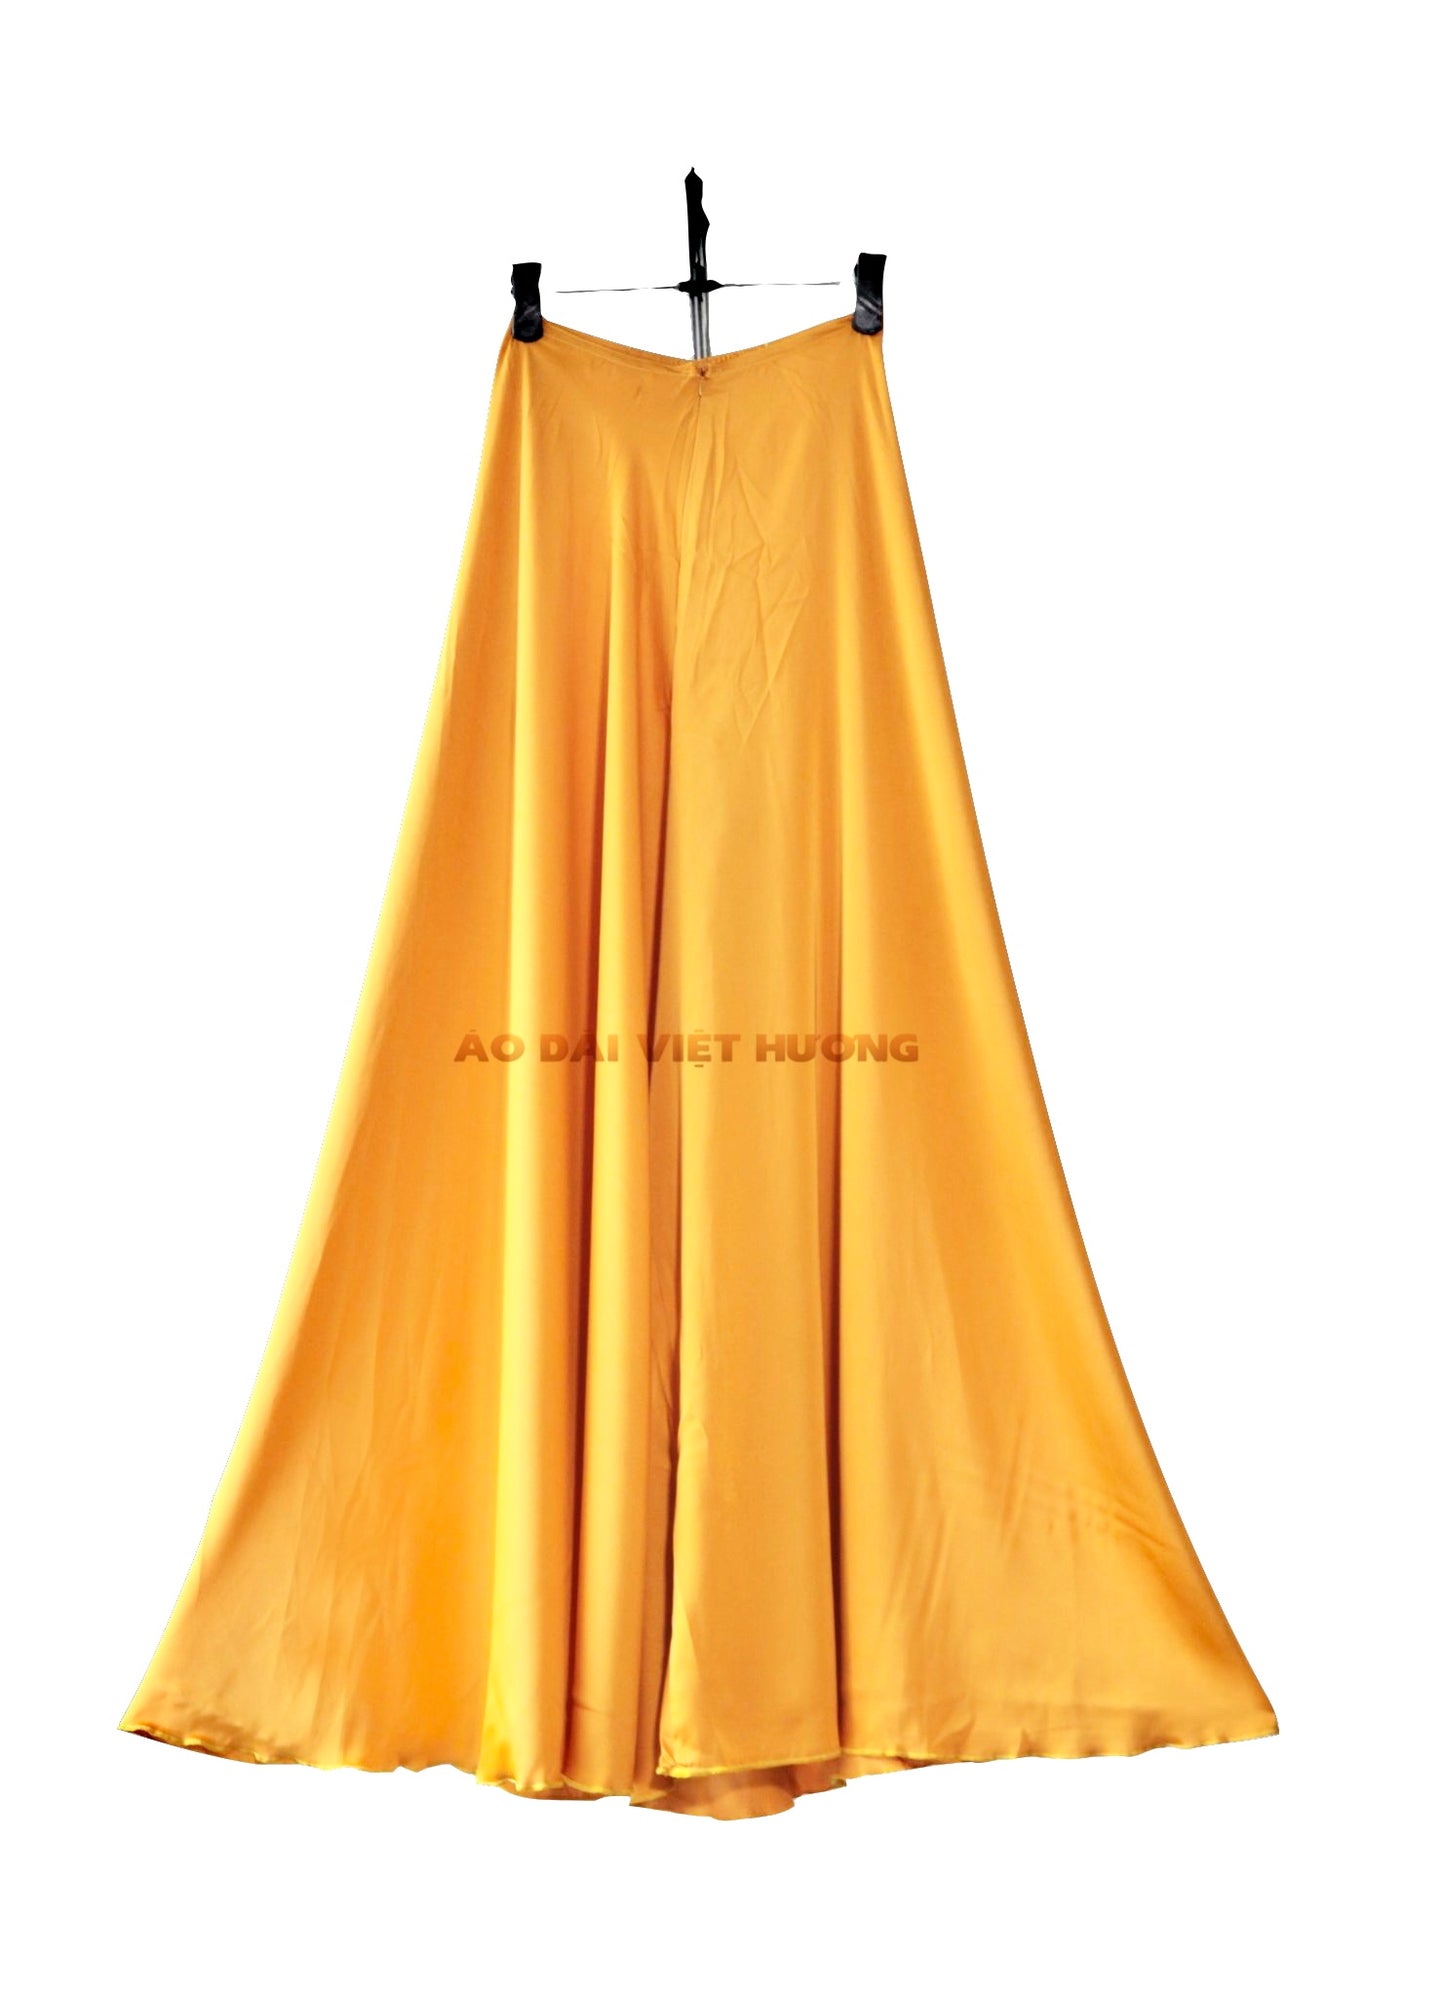 503 - Quần Váy Lụa Thái Tuấn Vàng Vàng (Quần Váy Ống Xéo Lụa Thái Tuấn Vàng)